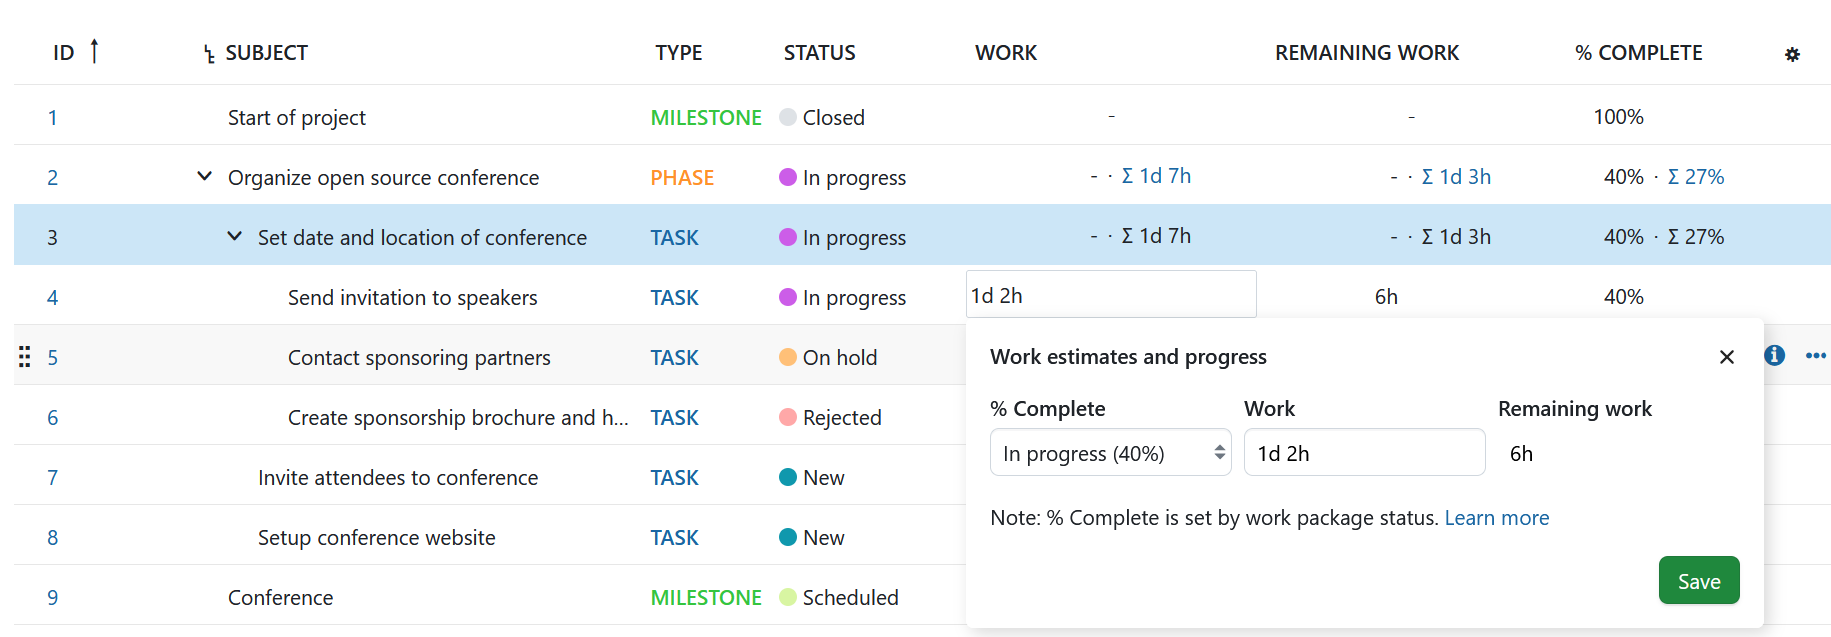 Arbeitspaket-Tabelle mit statusbasierten Fortschrittsberichten